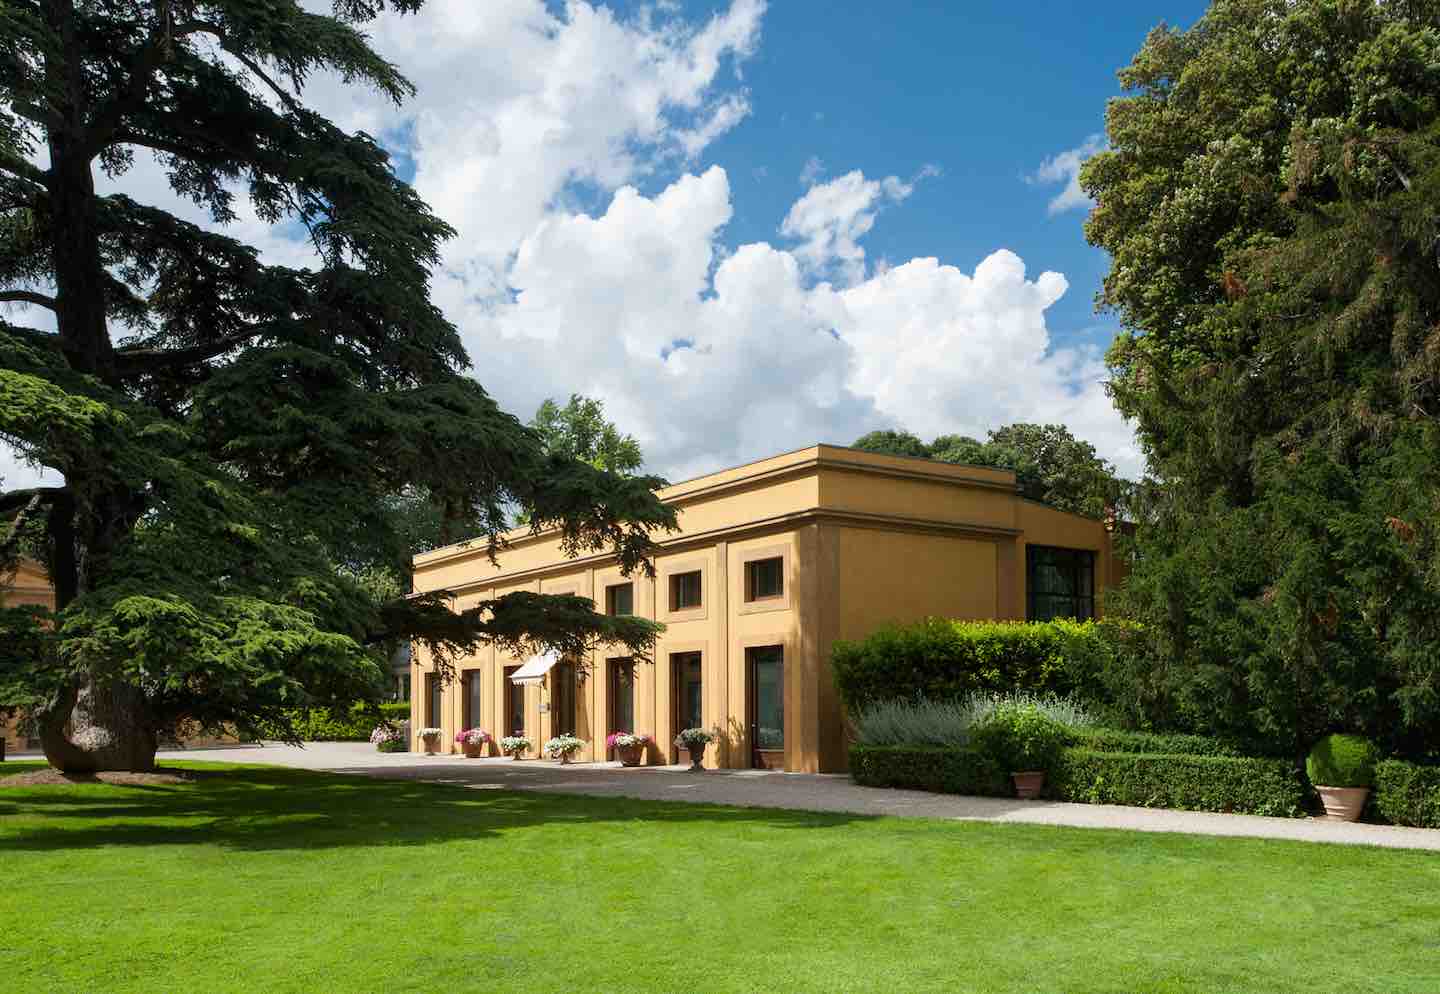 Il Giardino della Gherardesca, il giardino del Four Seasons Firenze aperto al pubblico per una raccolta fondi per l'Istituto degli Innocenti